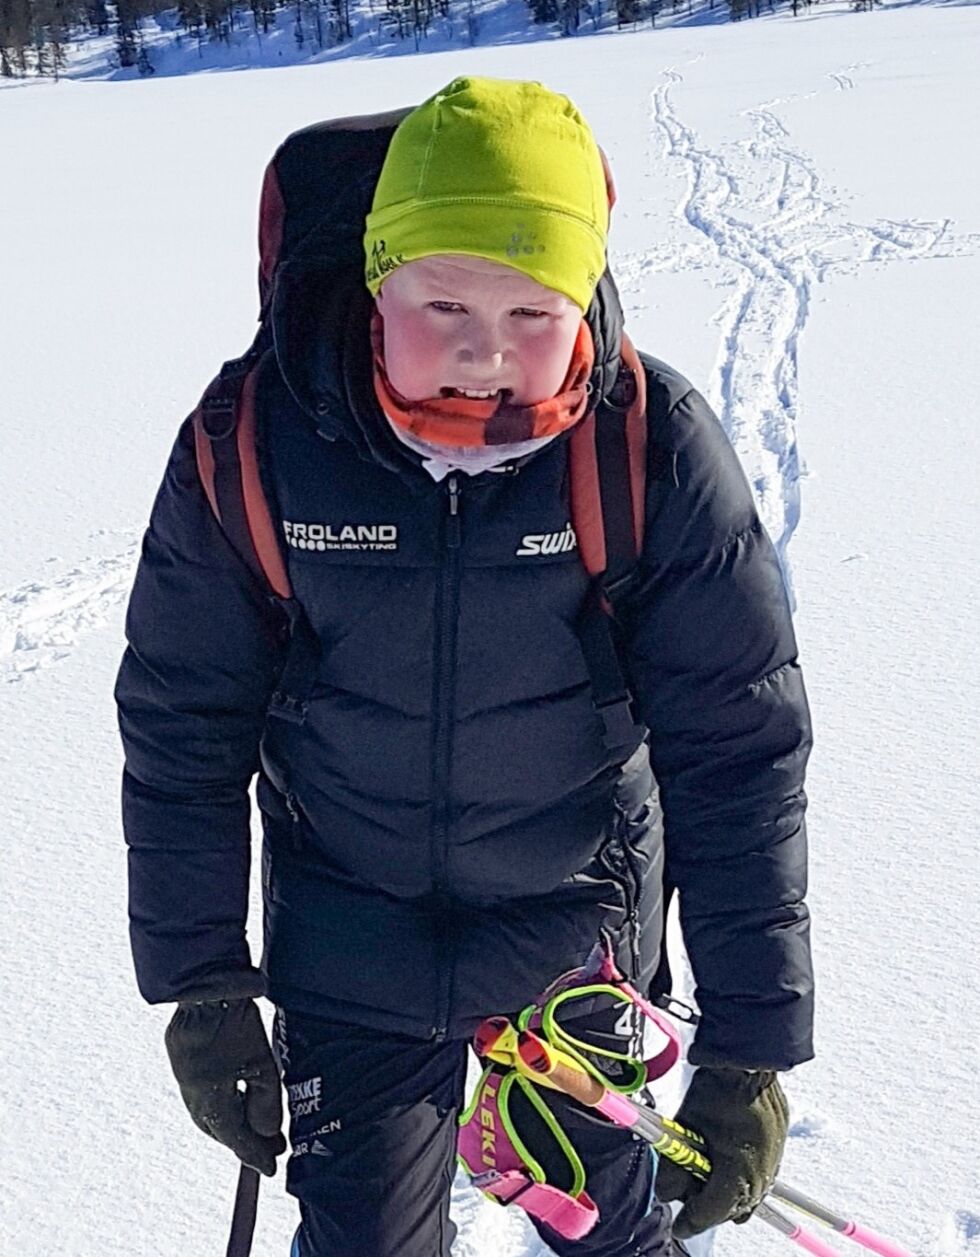 SKI: Lars Bøylestad Landa måtte gå langt på ski for å vinne veddemålet med broren. Premien var nok penger til å kjøpe en ny iPhone. For å få godkjent veddemålet måtte Lars gjennomføre 10 sammenhengende runder i Gauperåløypene, som tilsvarer en skitur på 15 mil. FOTO: INGRID BØYLESTAD LANDA